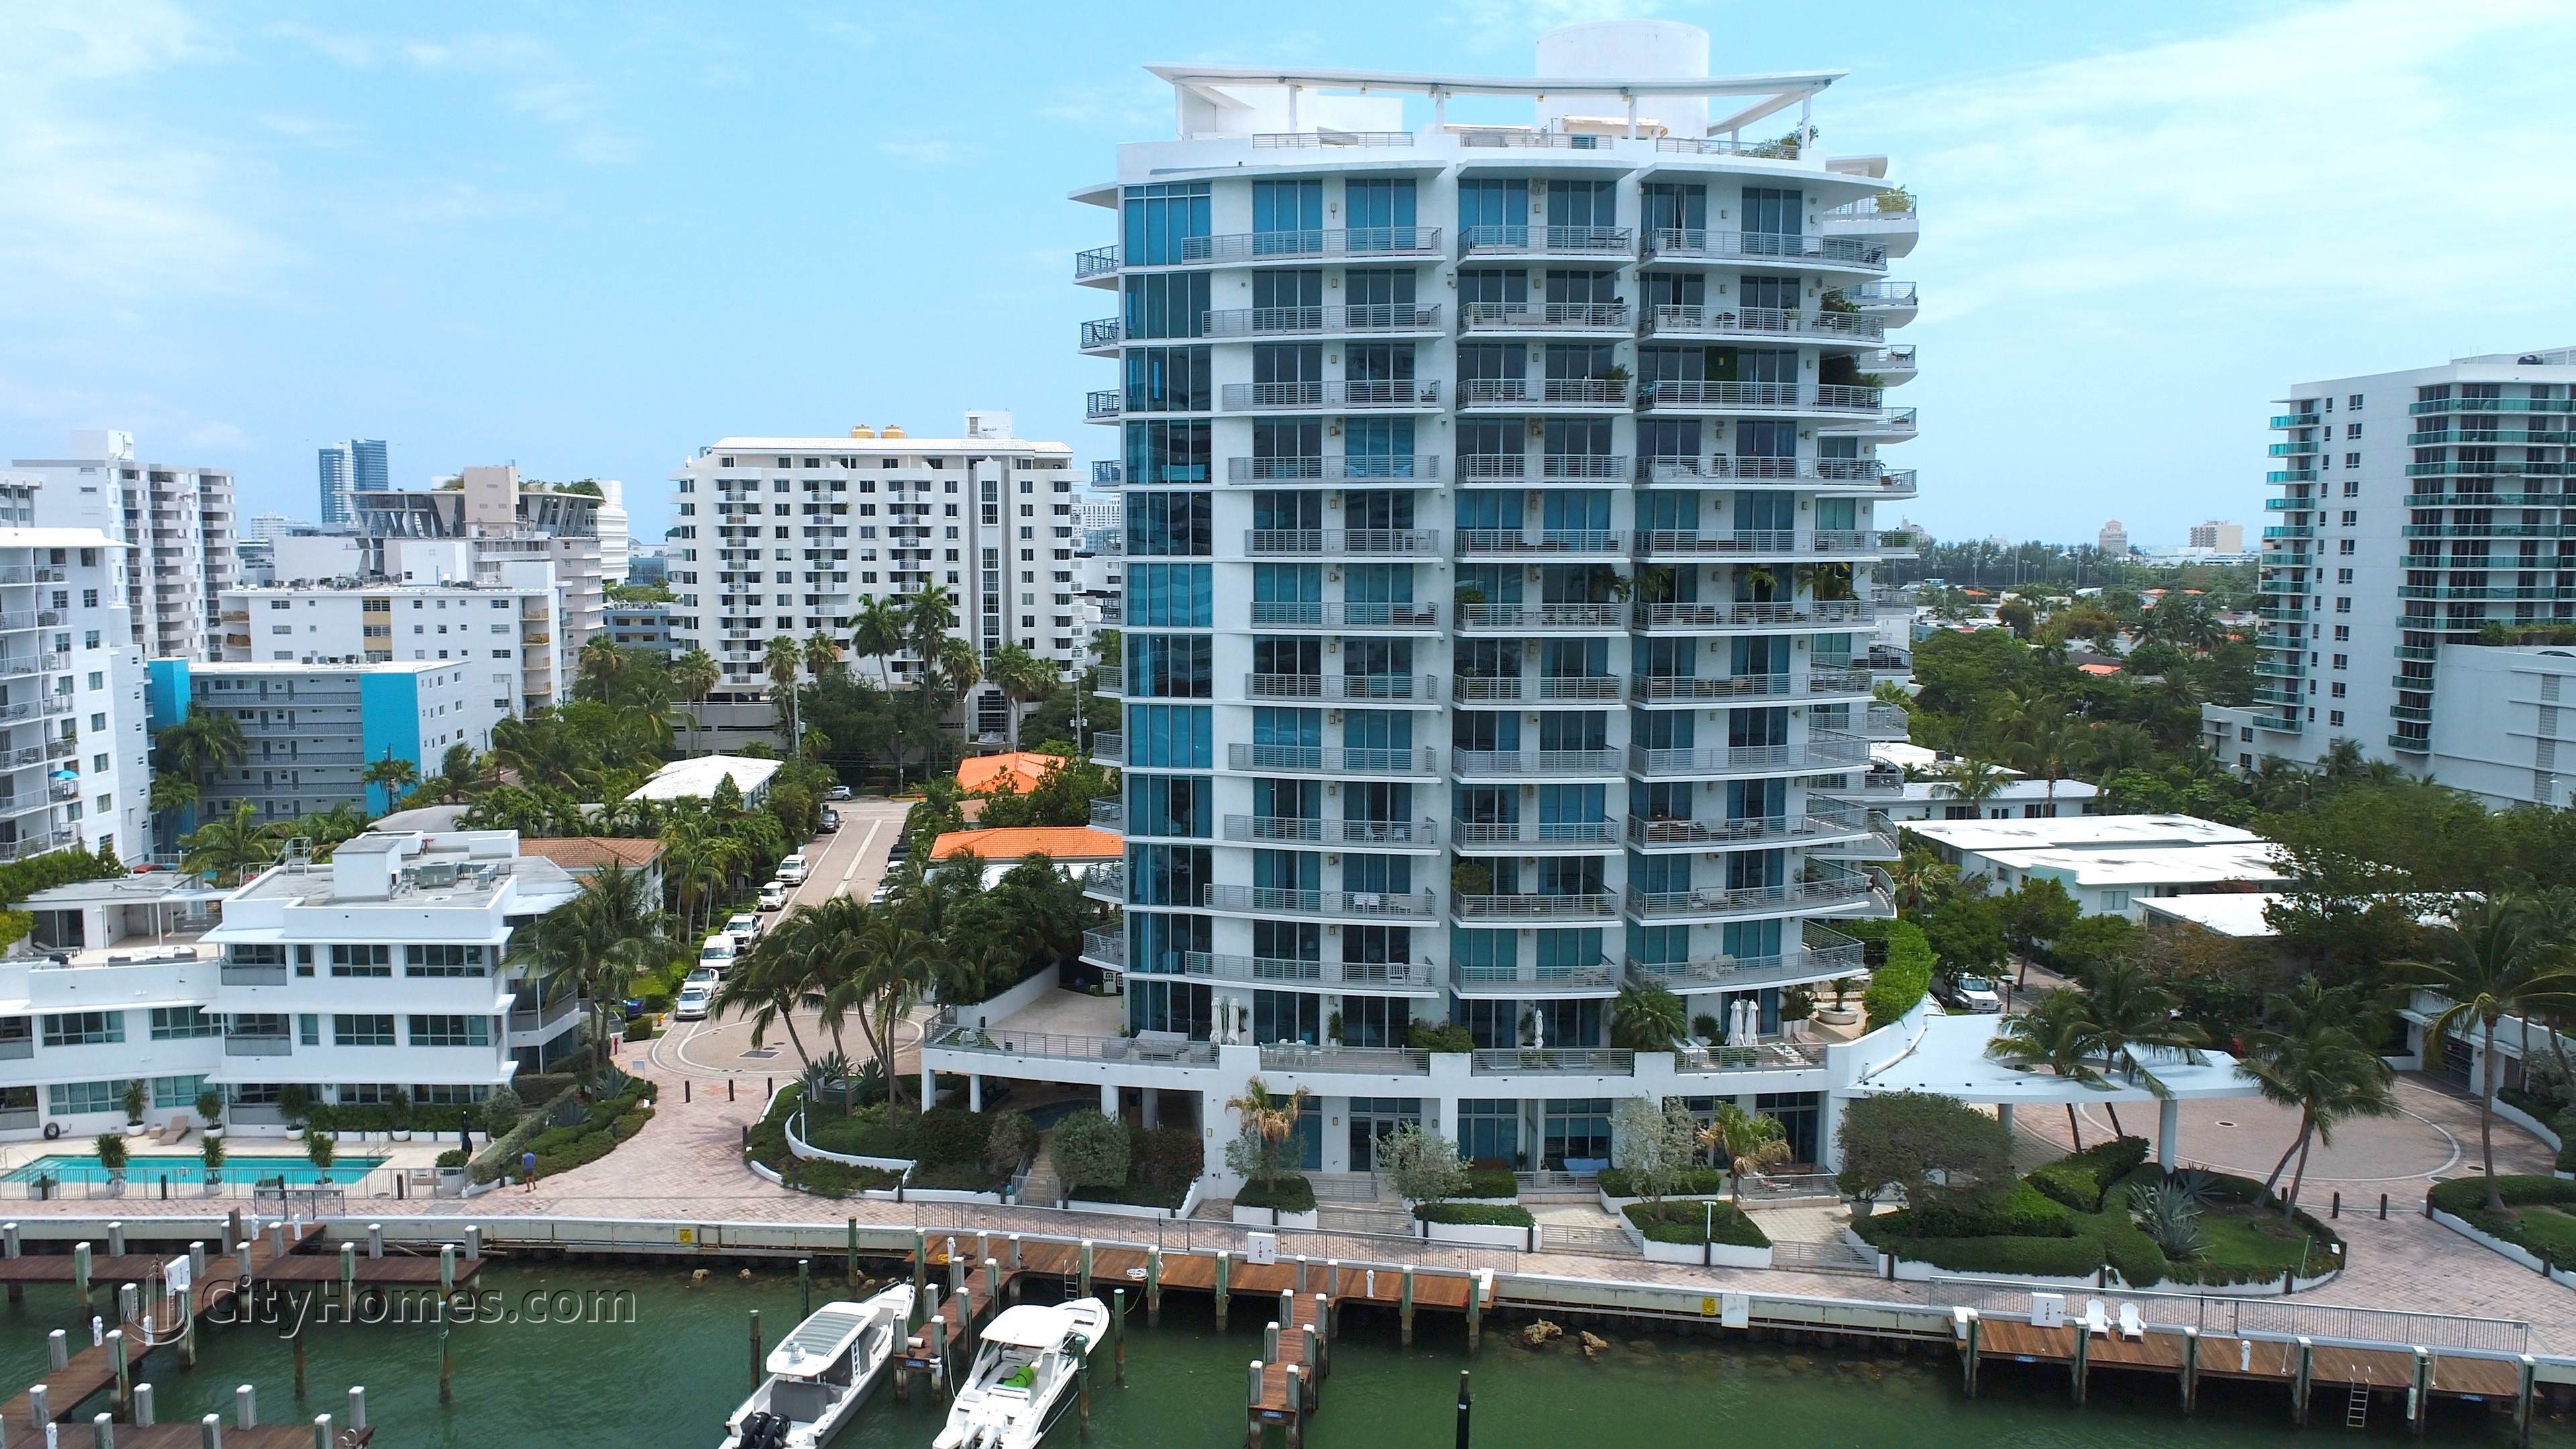 CAPRI SOUTH BEACH - MARINA PICCOLA xây dựng tại 1491 Lincoln Terrace, Miami Beach, FL 33139